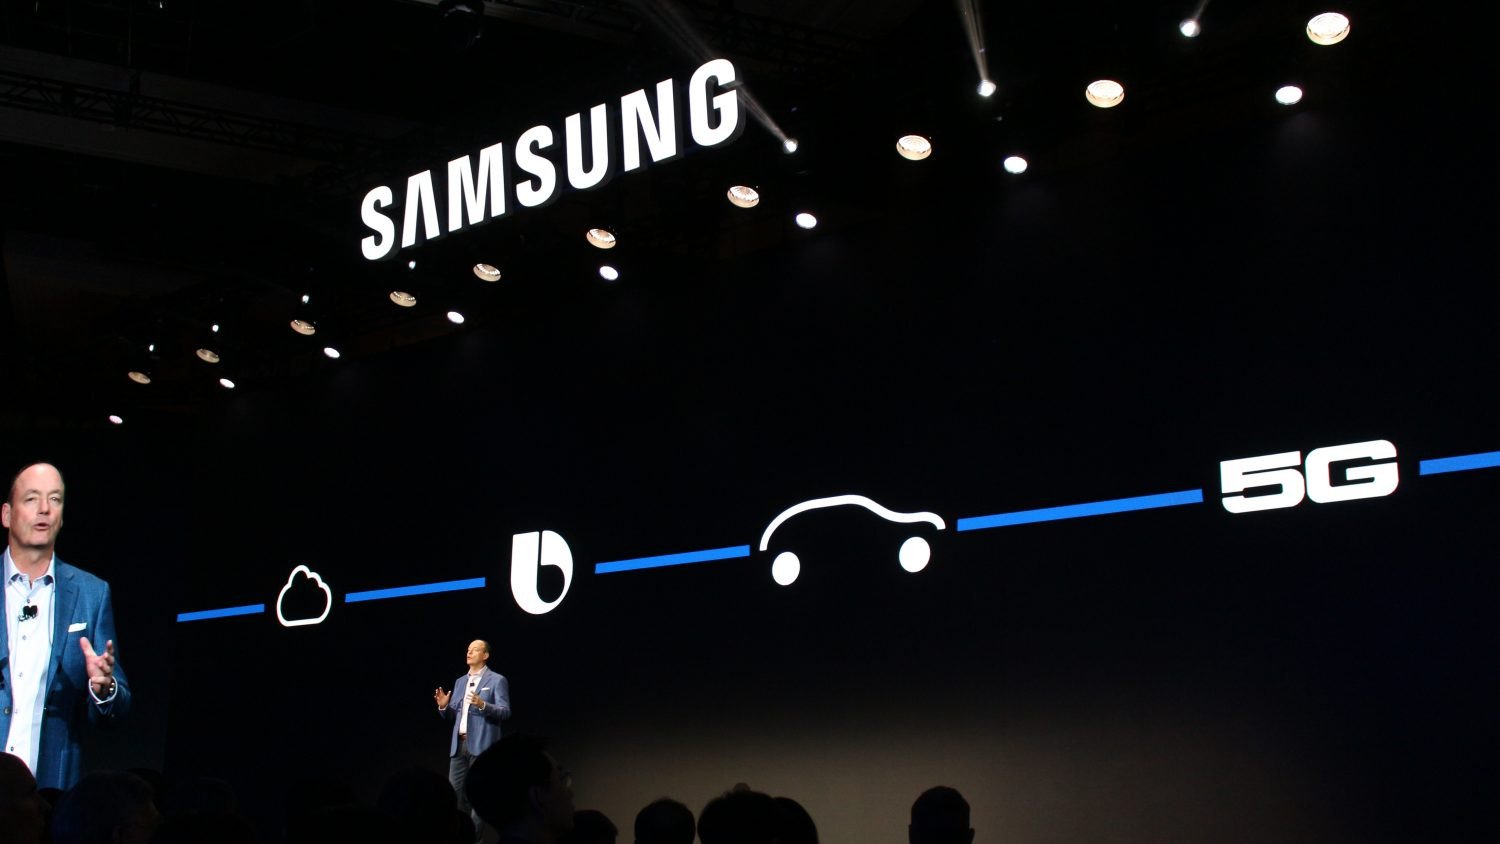 5G-o carro-chefe da Samsung — um dos três